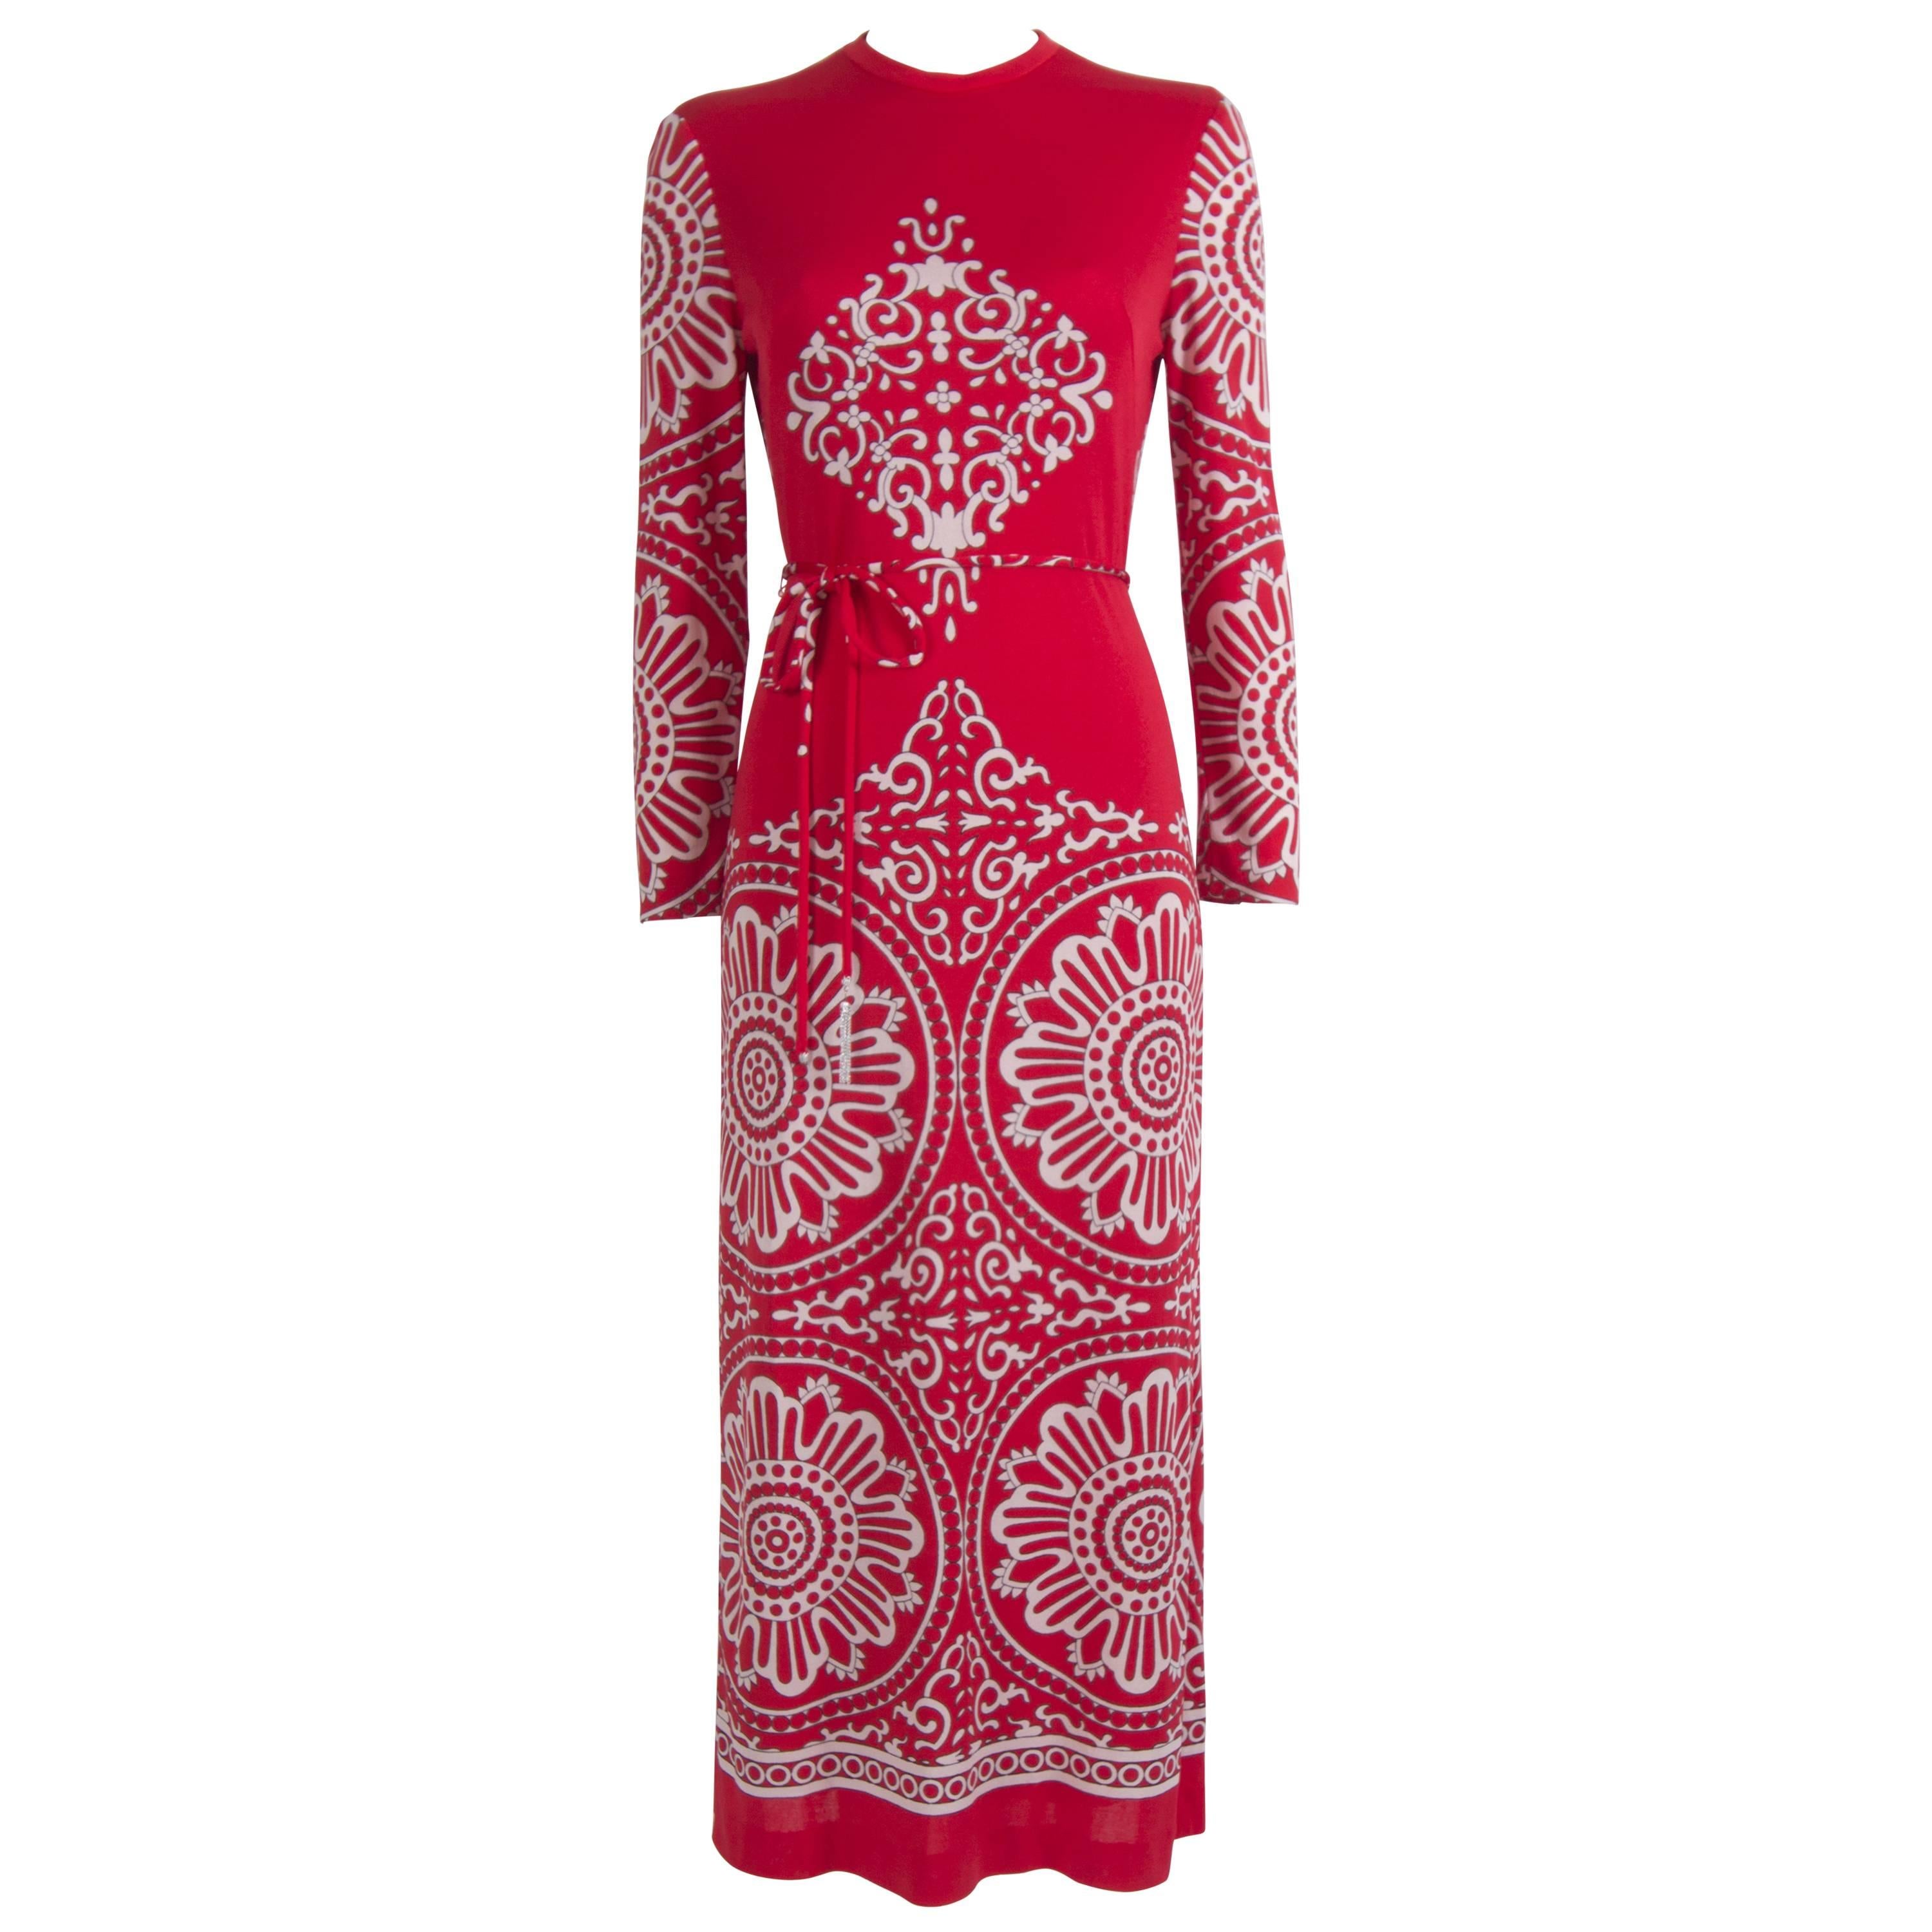 1970's Red And White Mirrored Mandala Dress